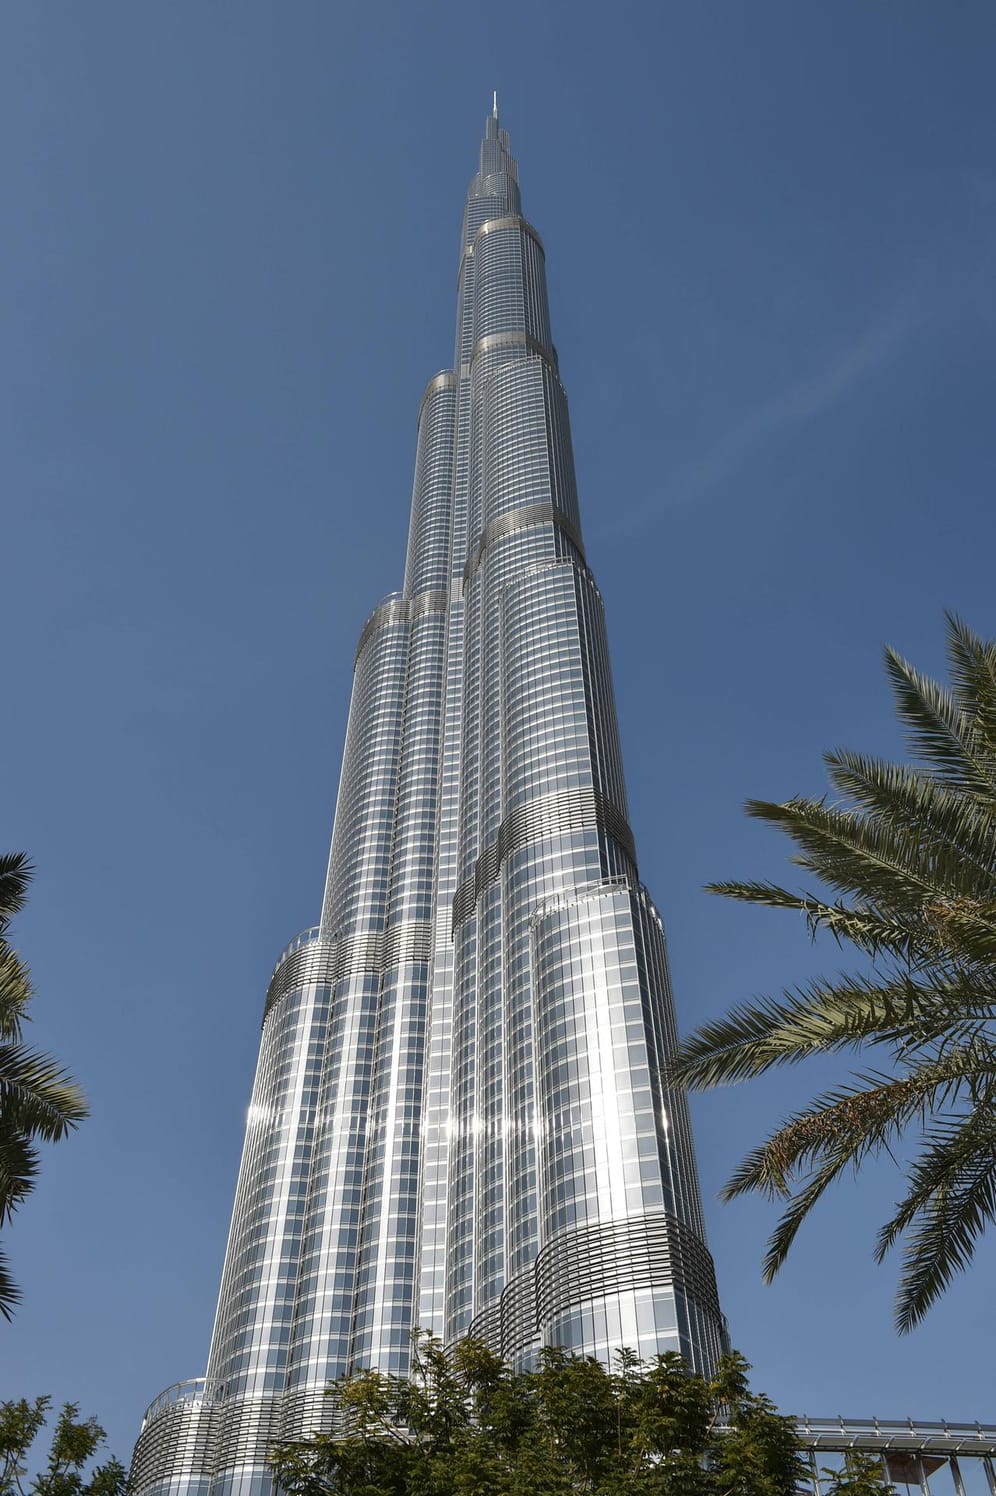 Burj Khalifa, mit 829,8 Metern das höchste Gebäude der Welt, hat eine spektakuläre Aussichtsplattform im 123. Stock.